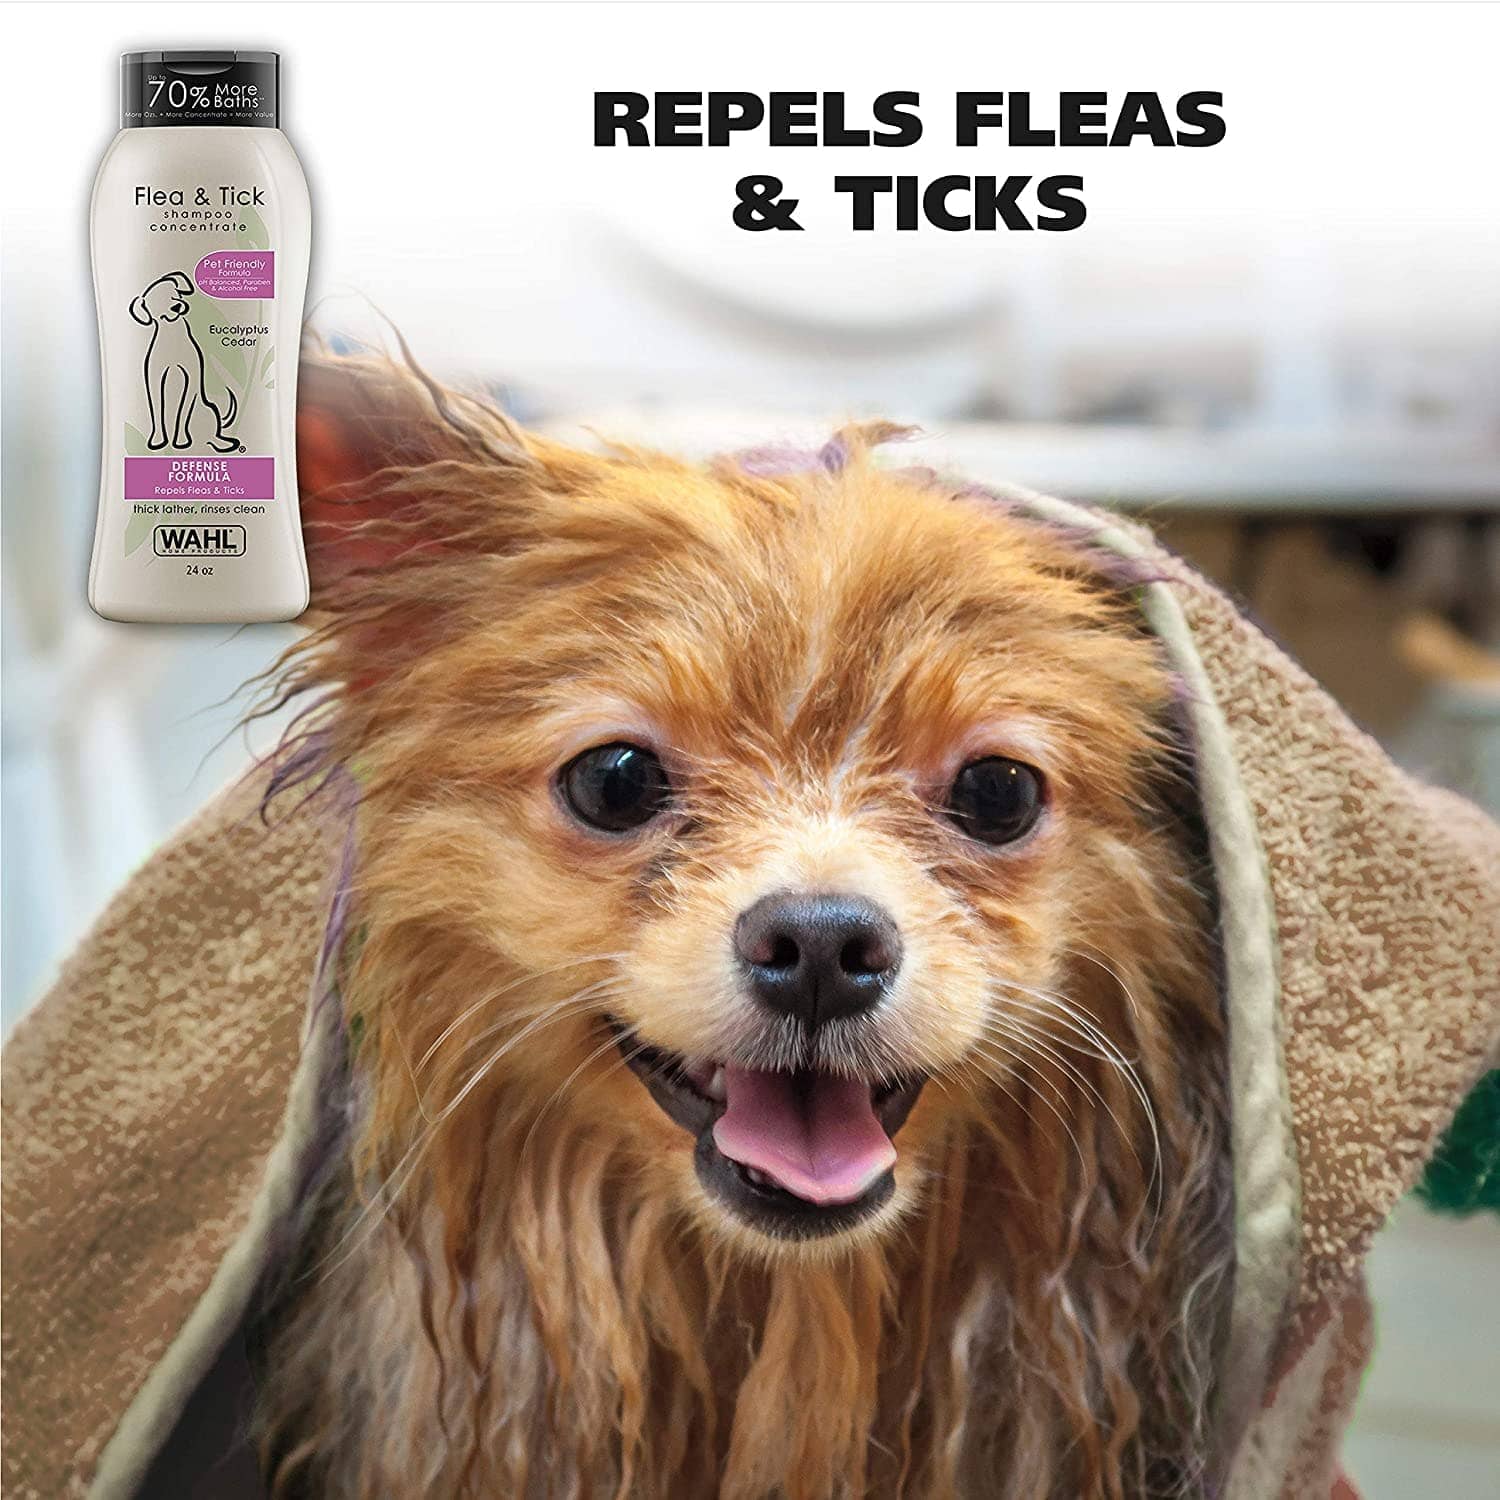 Wahl Flea Comb and Flea & Tick Eucalyptus Cedar Shampoo for Dogs Combo